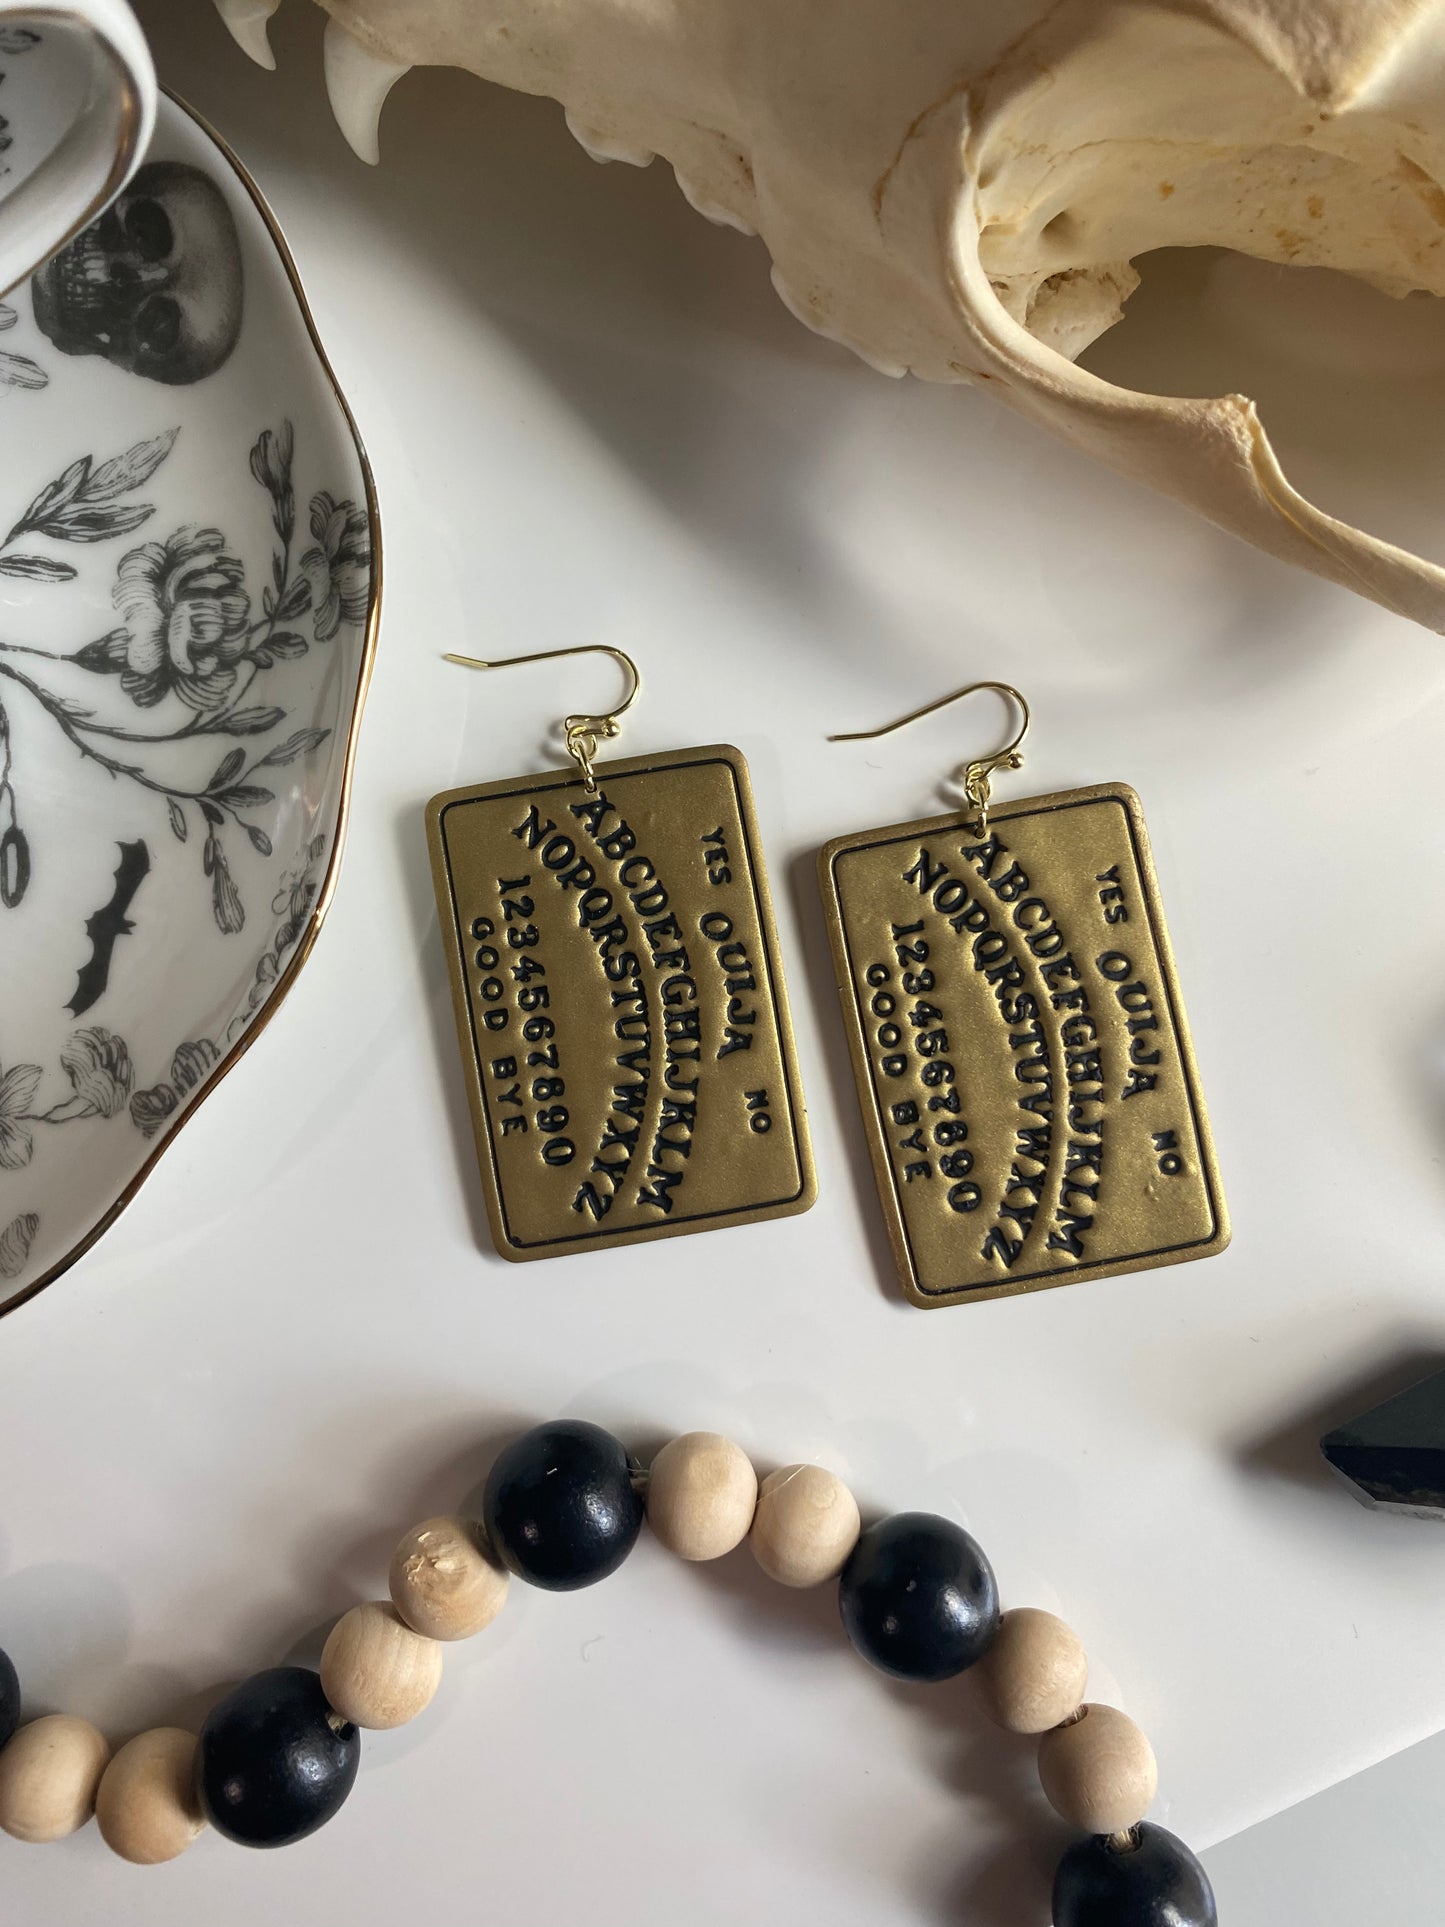 Gold spirit board earrings